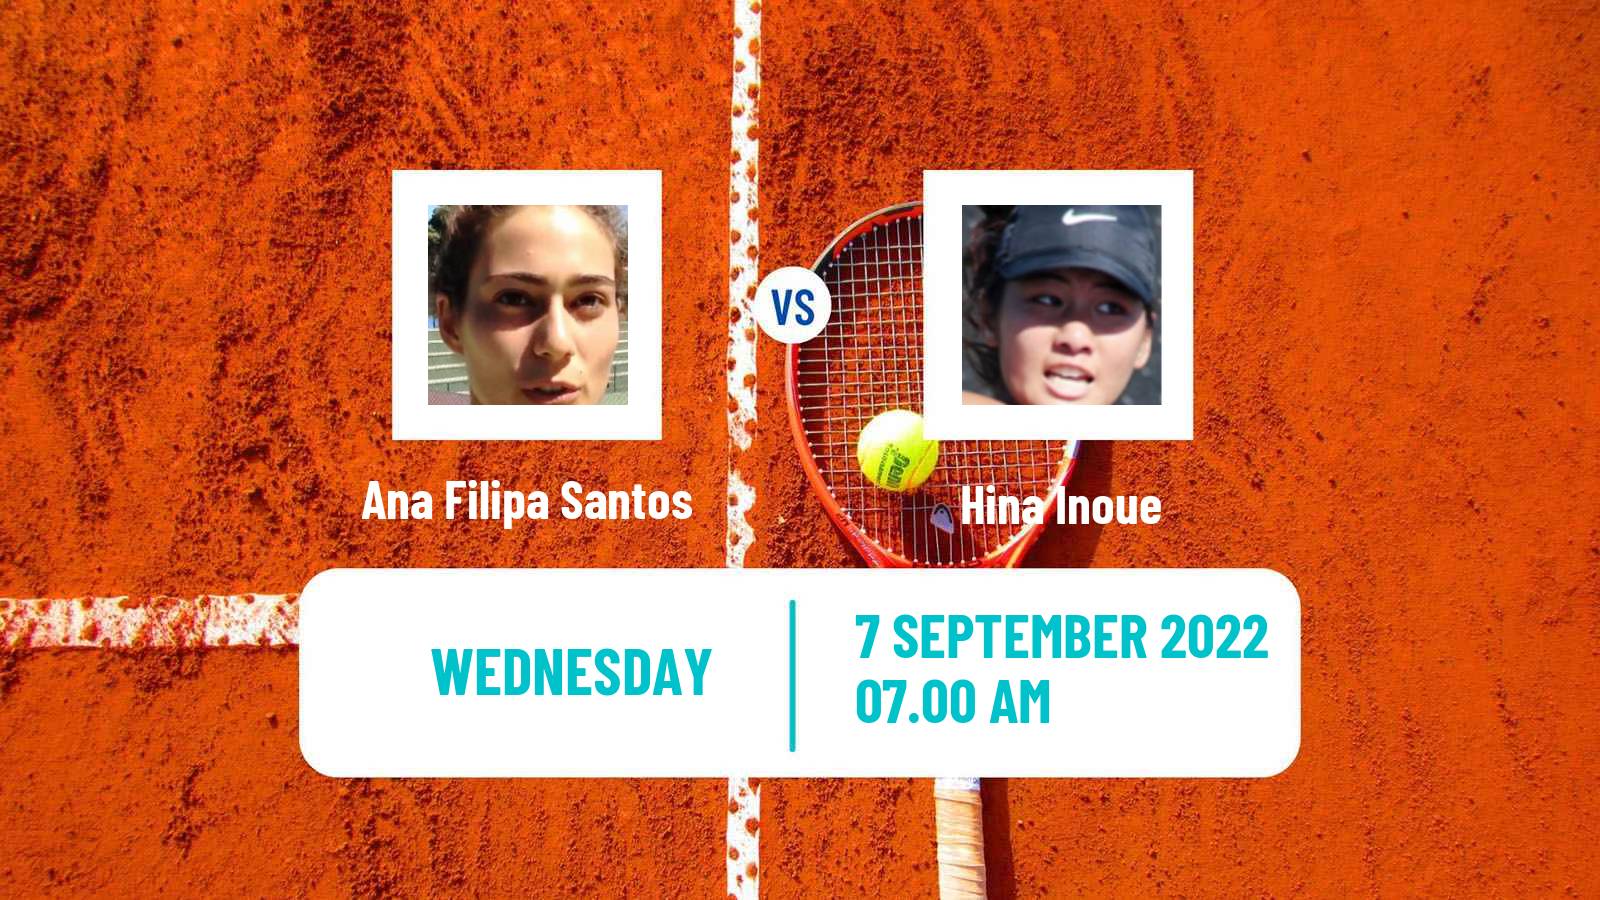 Tennis ITF Tournaments Ana Filipa Santos - Hina Inoue